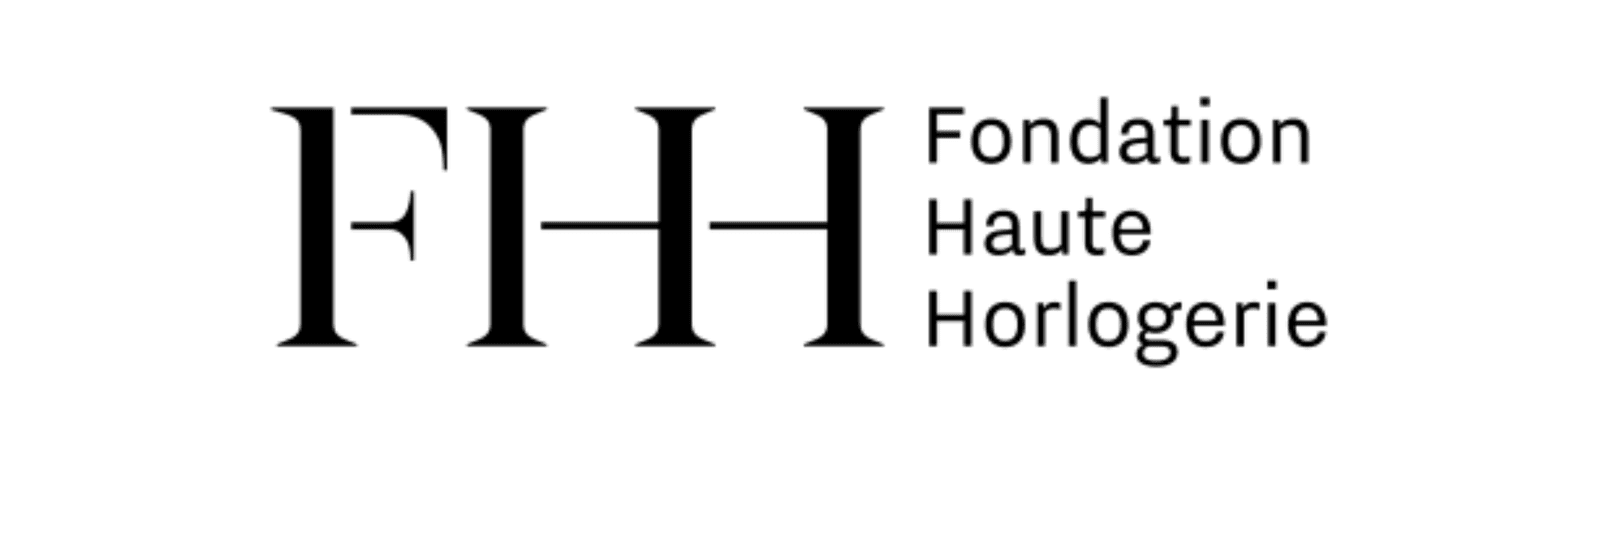 Fondation Haute Horlogerie